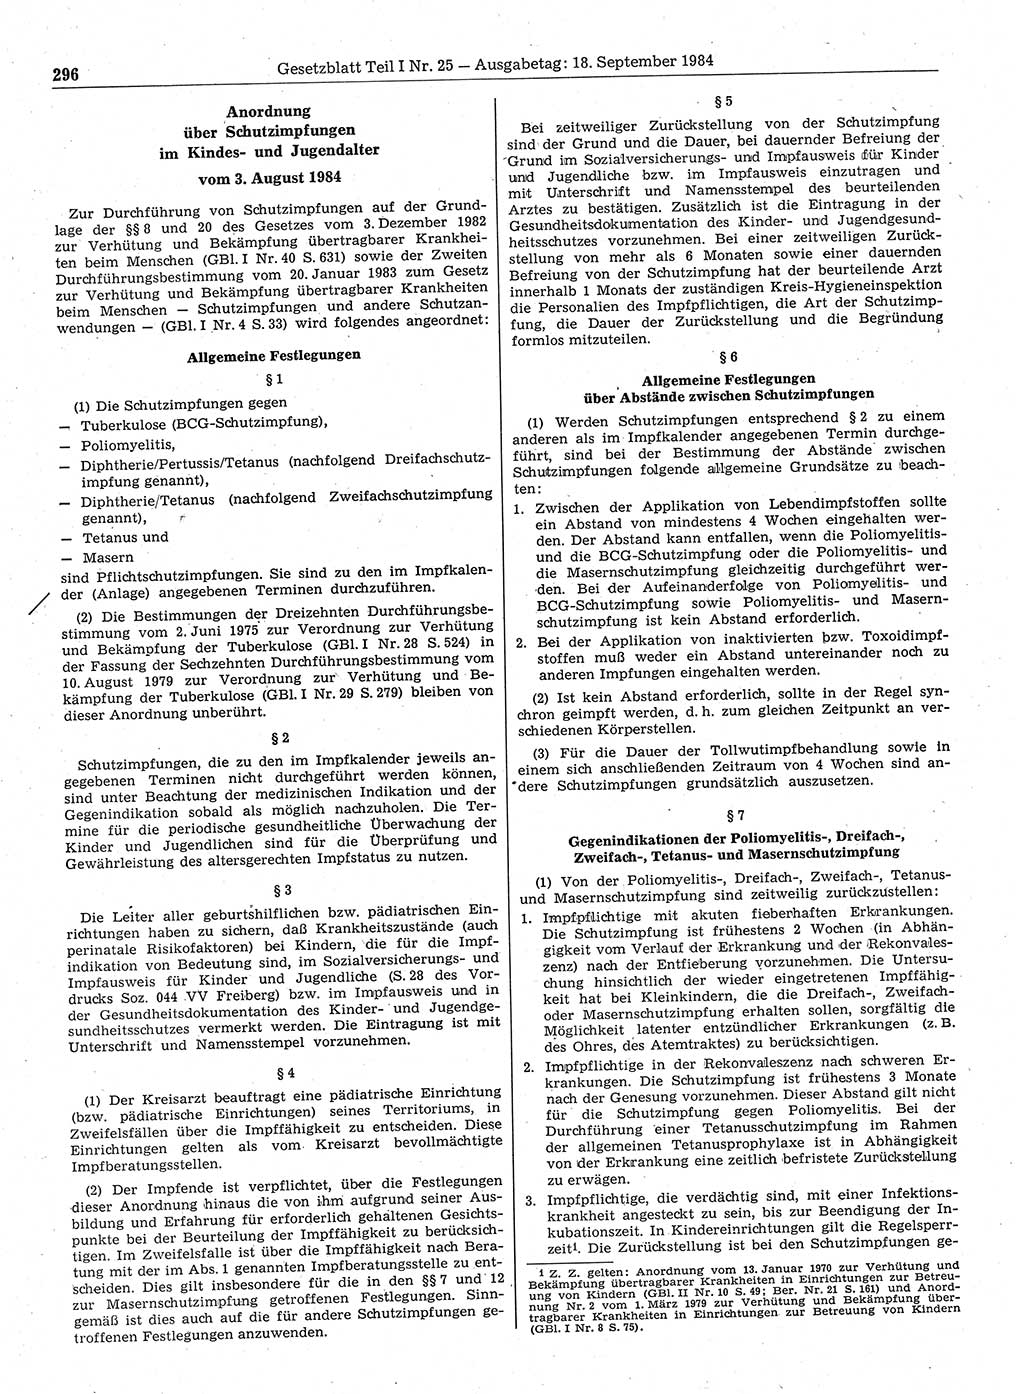 Gesetzblatt (GBl.) der Deutschen Demokratischen Republik (DDR) Teil Ⅰ 1984, Seite 296 (GBl. DDR Ⅰ 1984, S. 296)